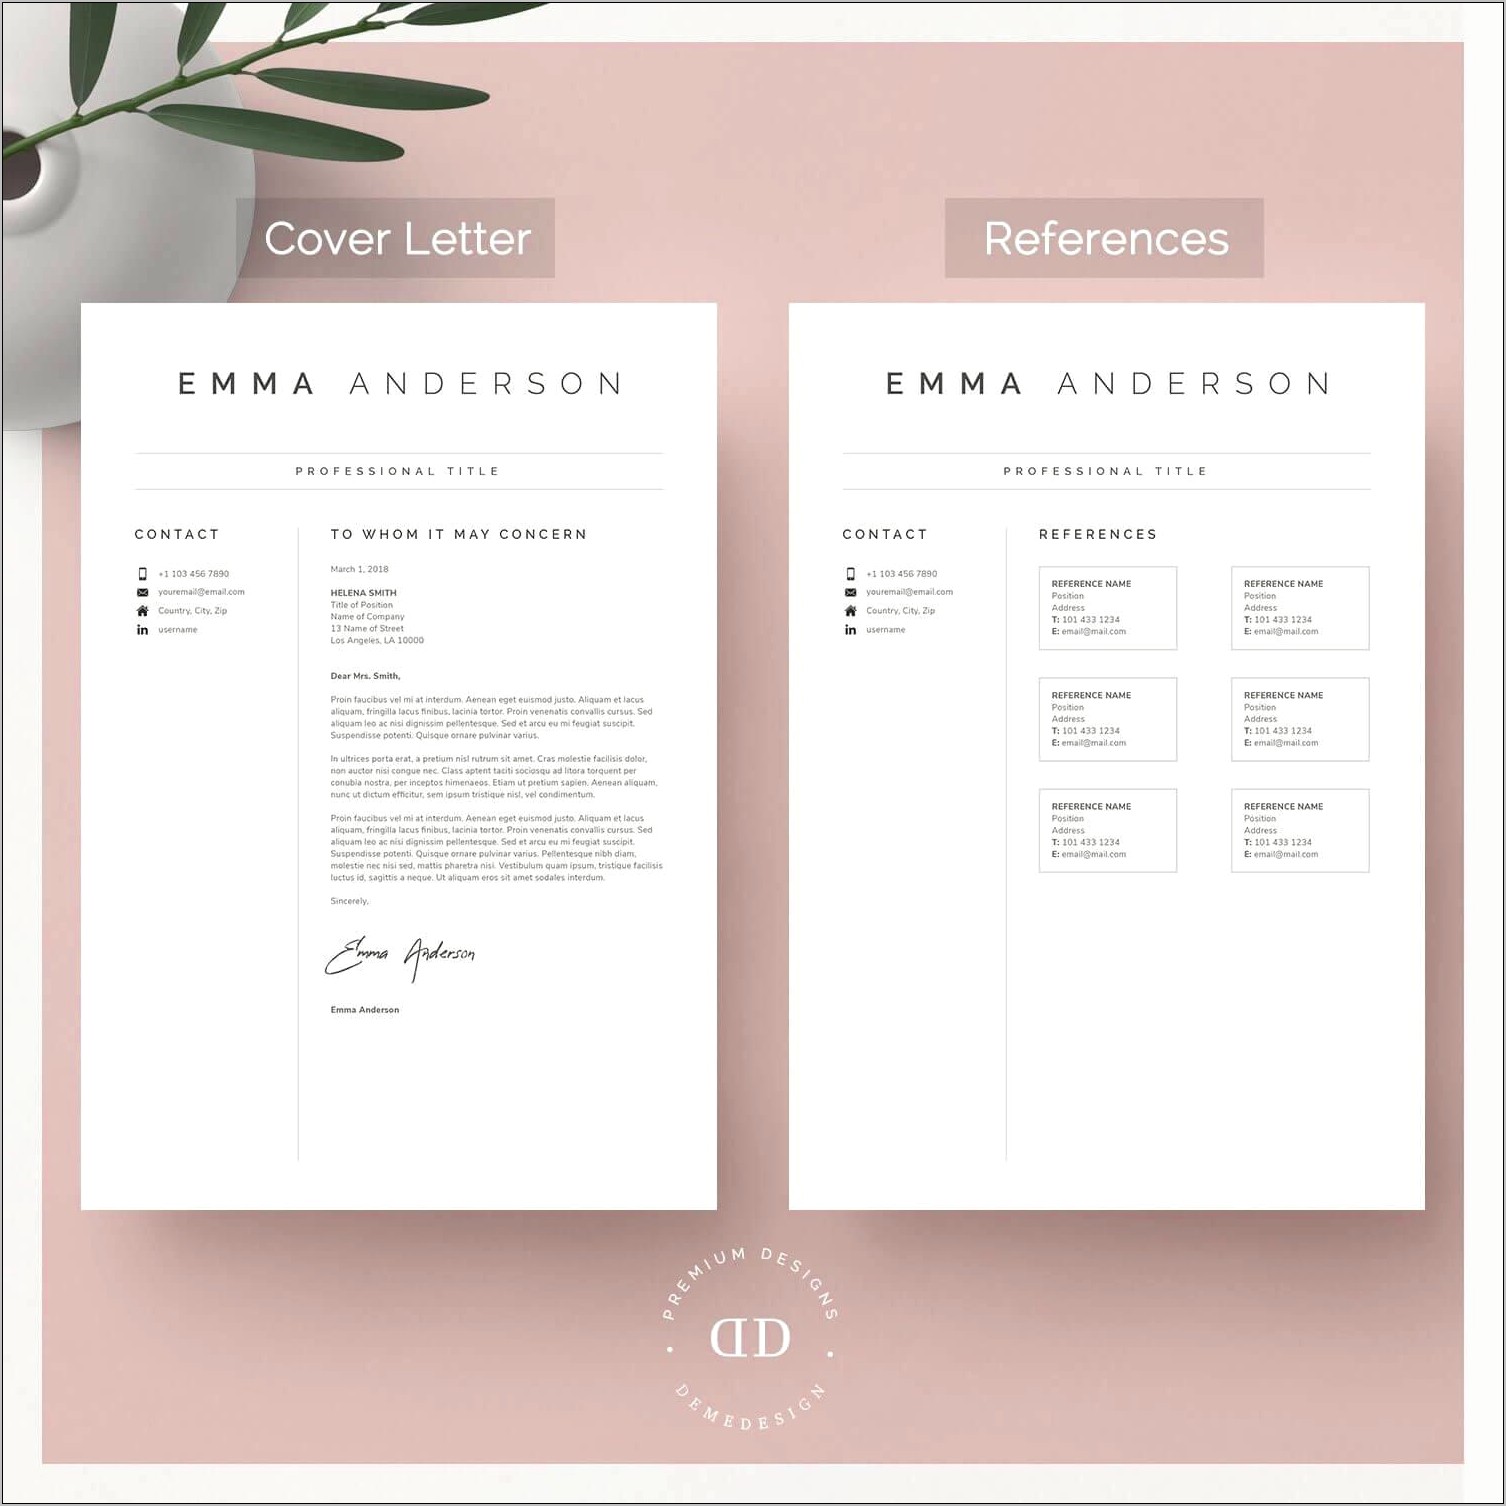 Create Cover Letter For Resume Sample